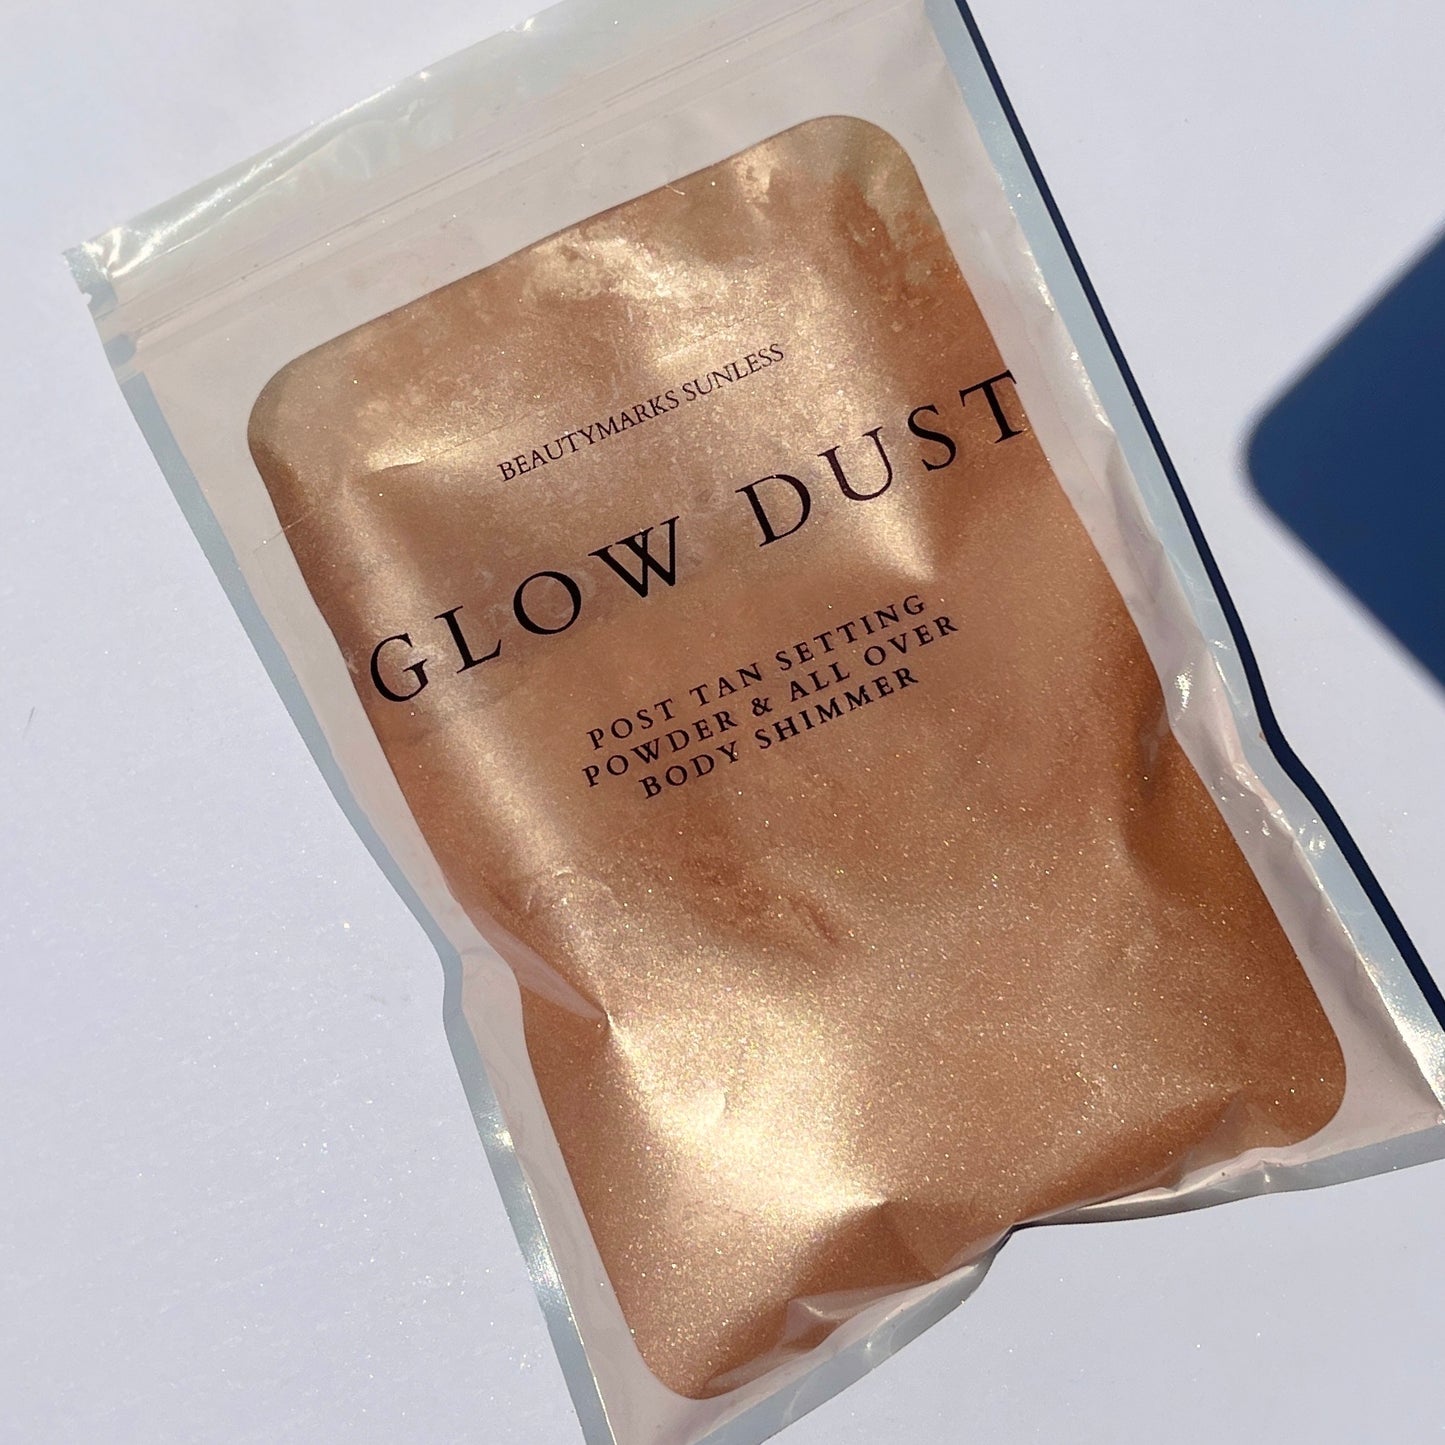 Glow Dust: Pro Bag